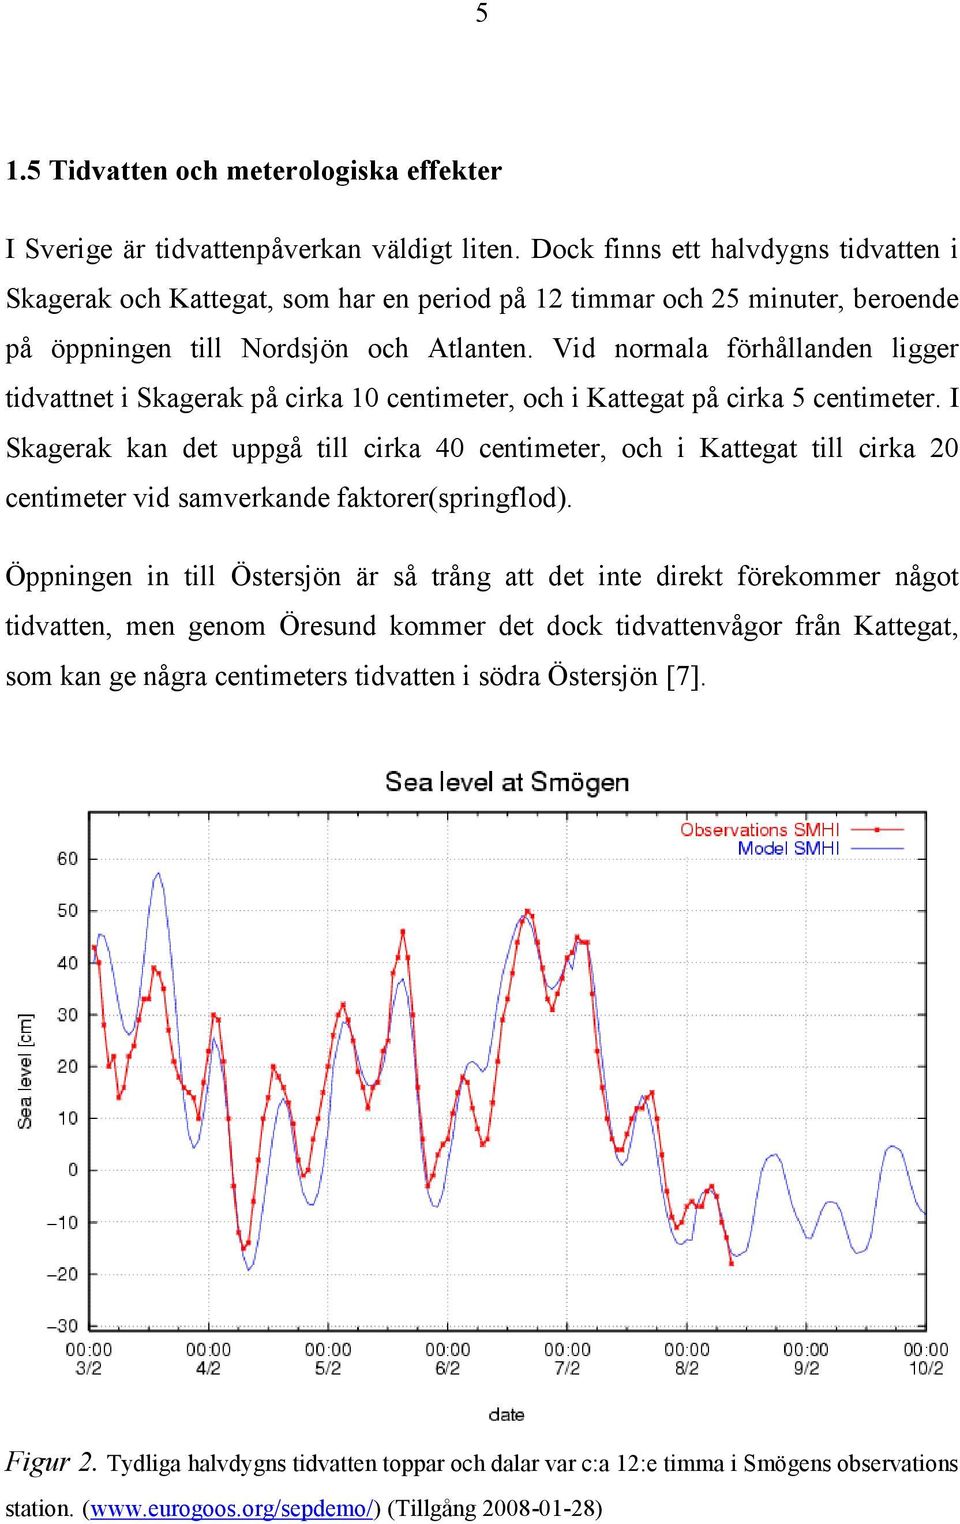 Vid normala förhållanden ligger tidvattnet i Skagerak på cirka 10 centimeter, och i Kattegat på cirka 5 centimeter.